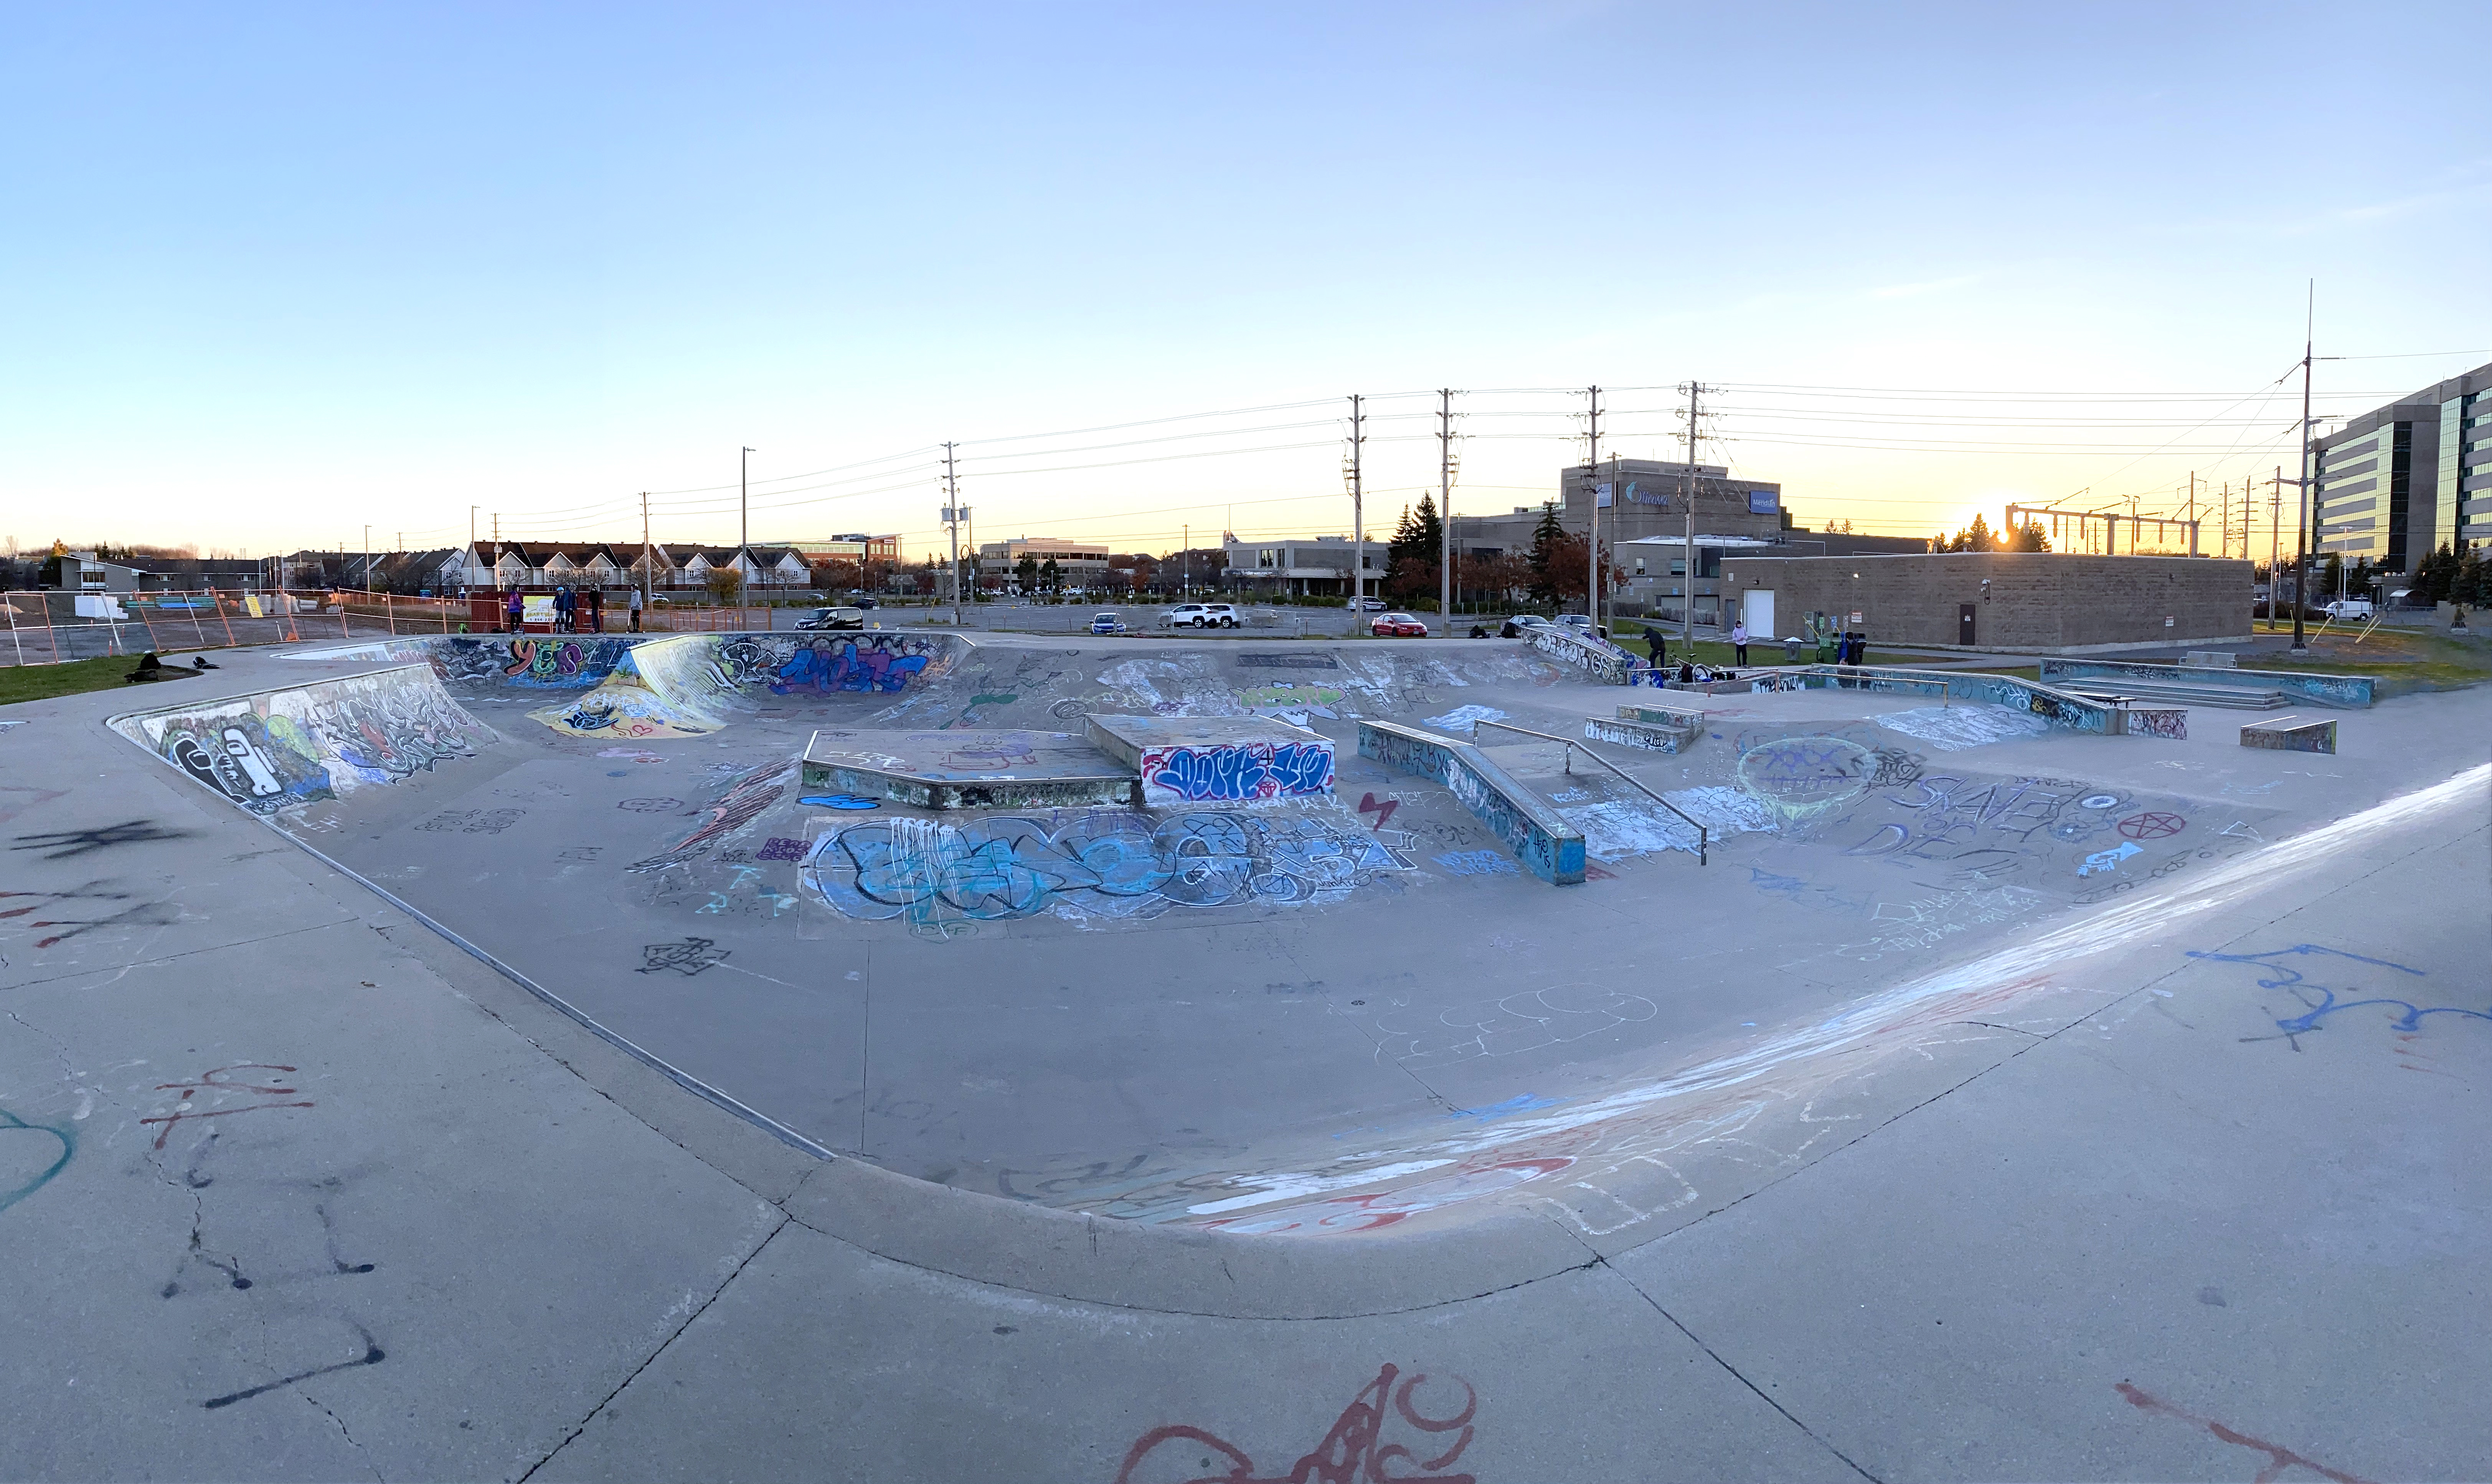 Ottawa legacy skatepark